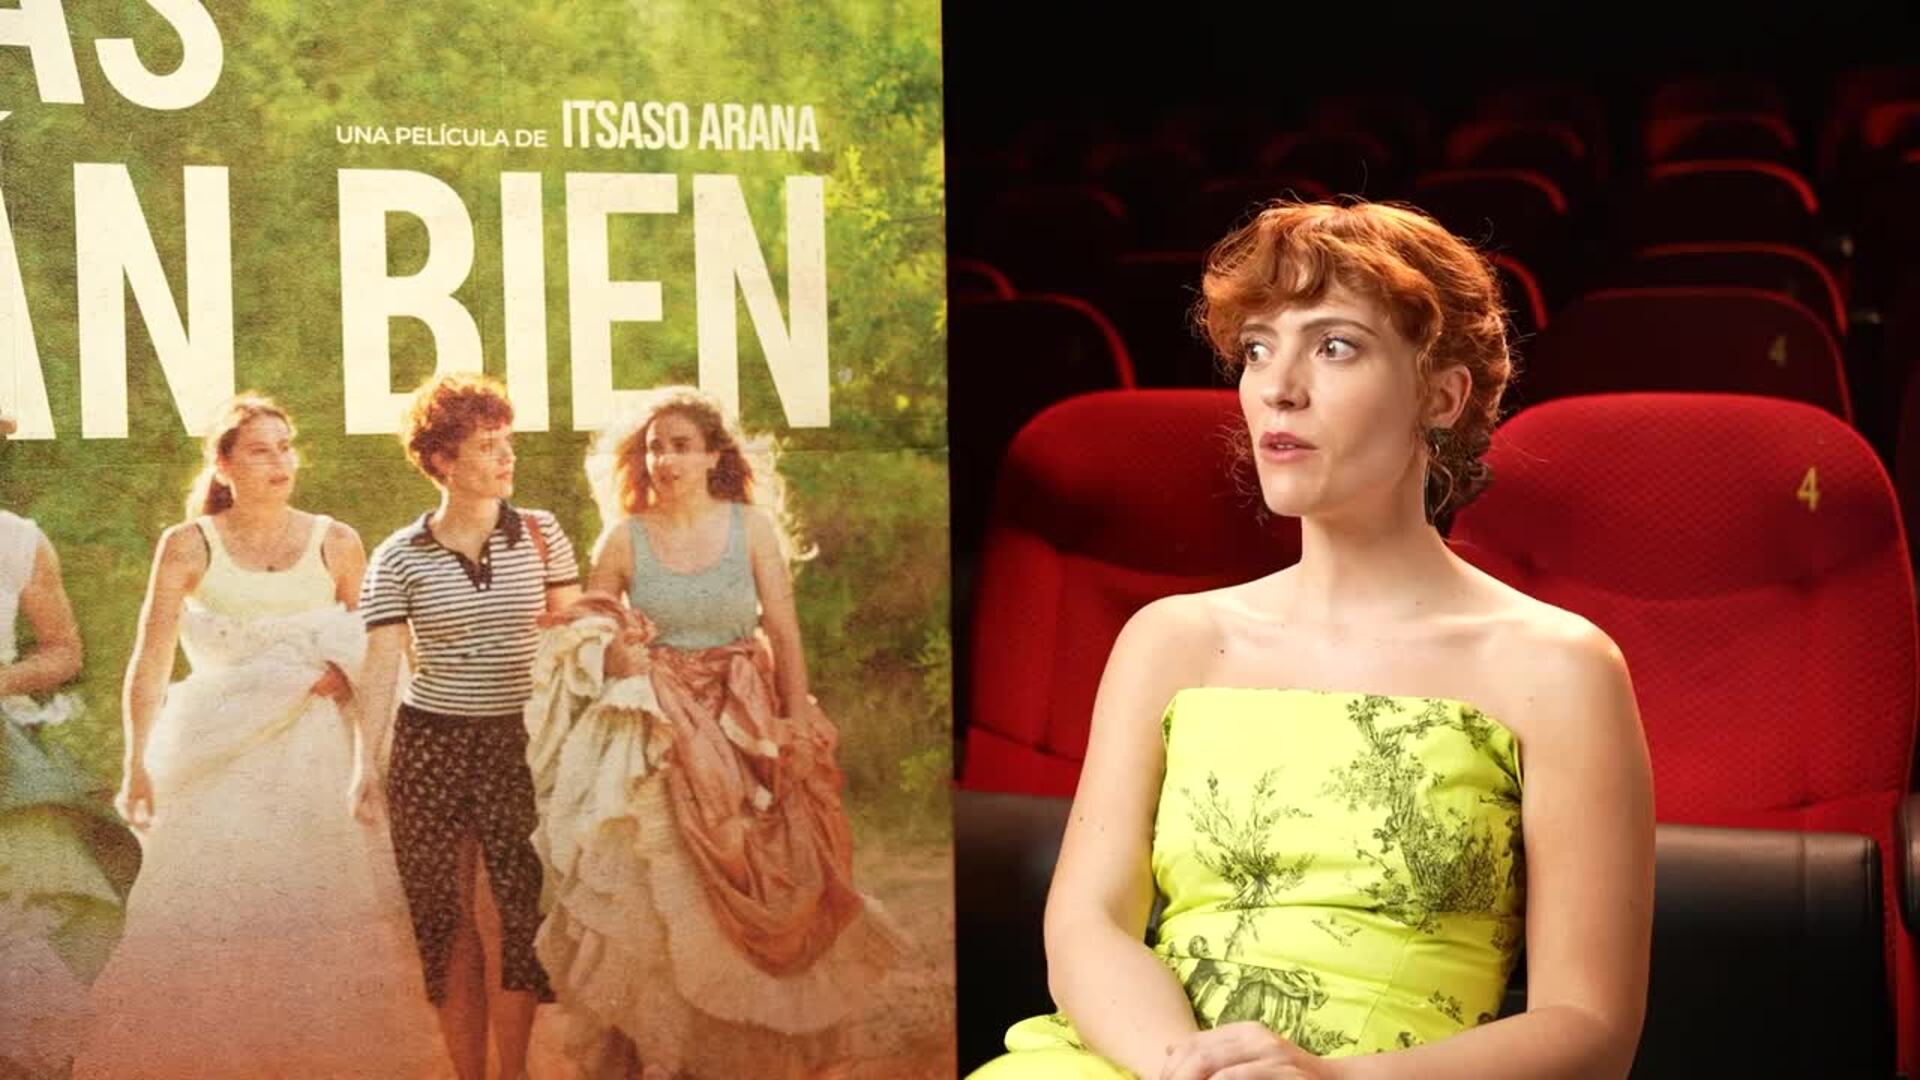 Itsaso Arana debuta con 'Las chicas están bien': "El cine no es una profesión de gente fácil"